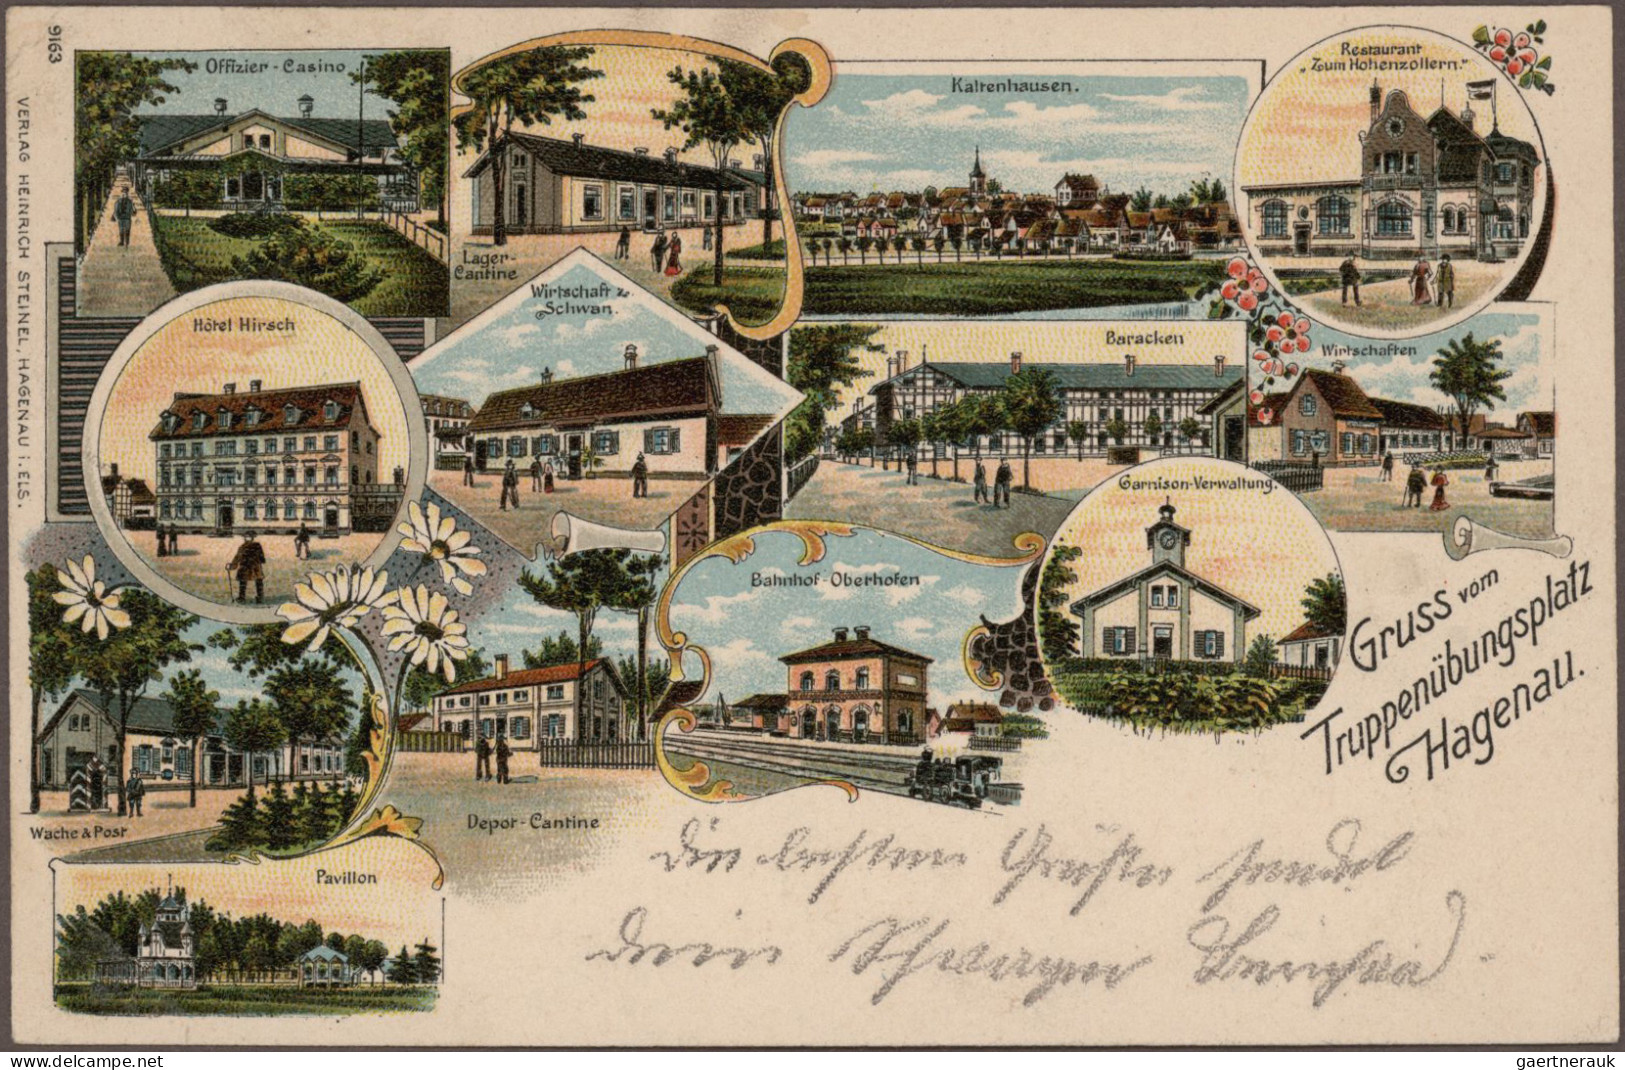 Ansichtskarten: 1890/1930, Topographie Deutschland, Partie mit rund 280 Karten m